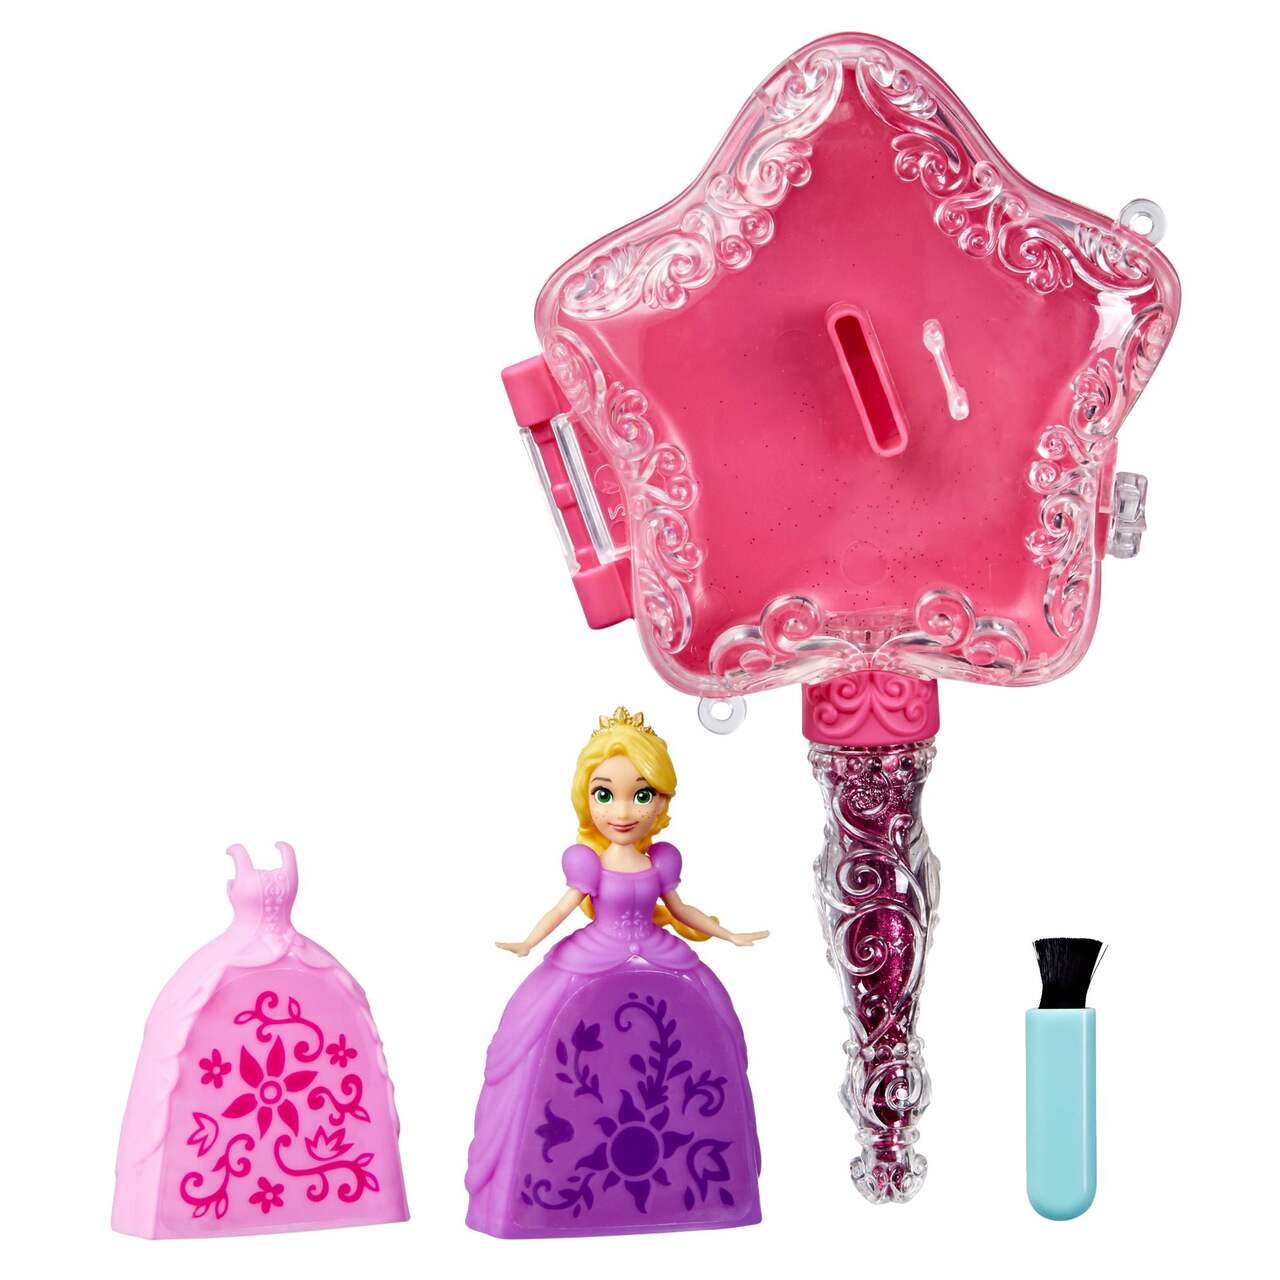 Disney Princess assorted mini glitter dolls 8cm